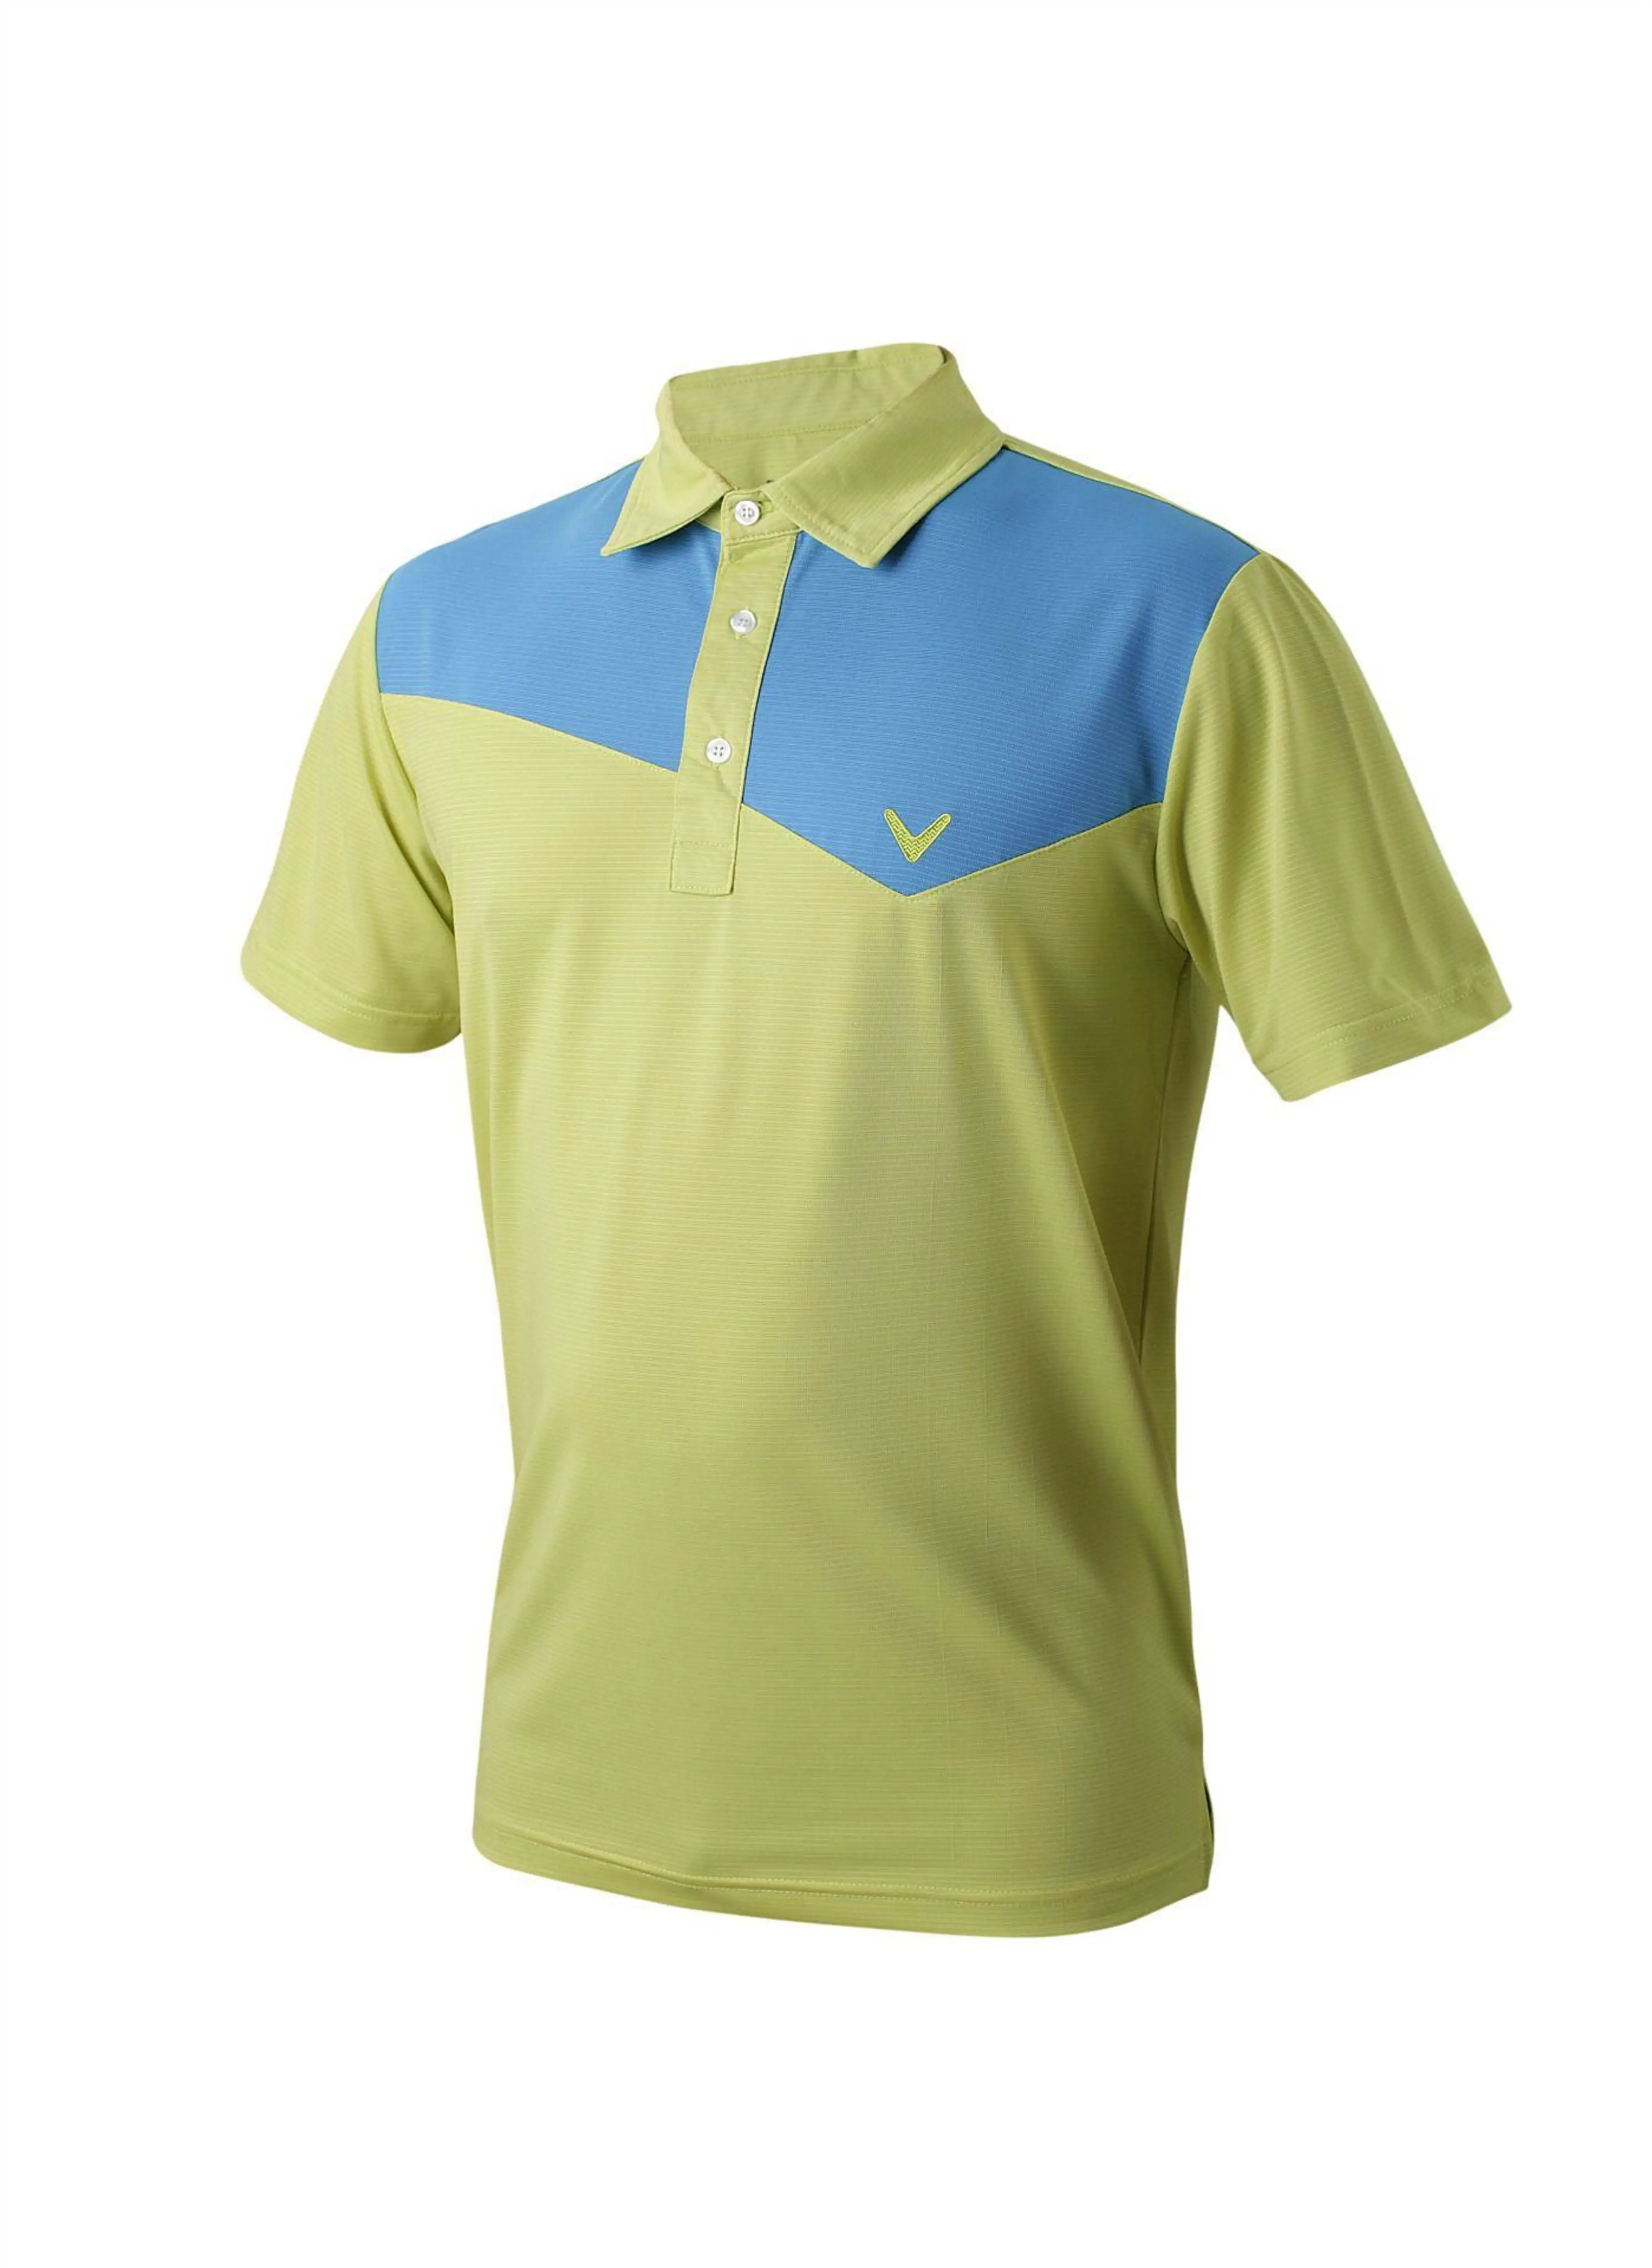 CALLAWAV Мужская футболка для гольфа короткая спортивная одежда рубашки для прогулок летняя быстросохнущая дышащая Сращивание цветная рубашка для гольфа